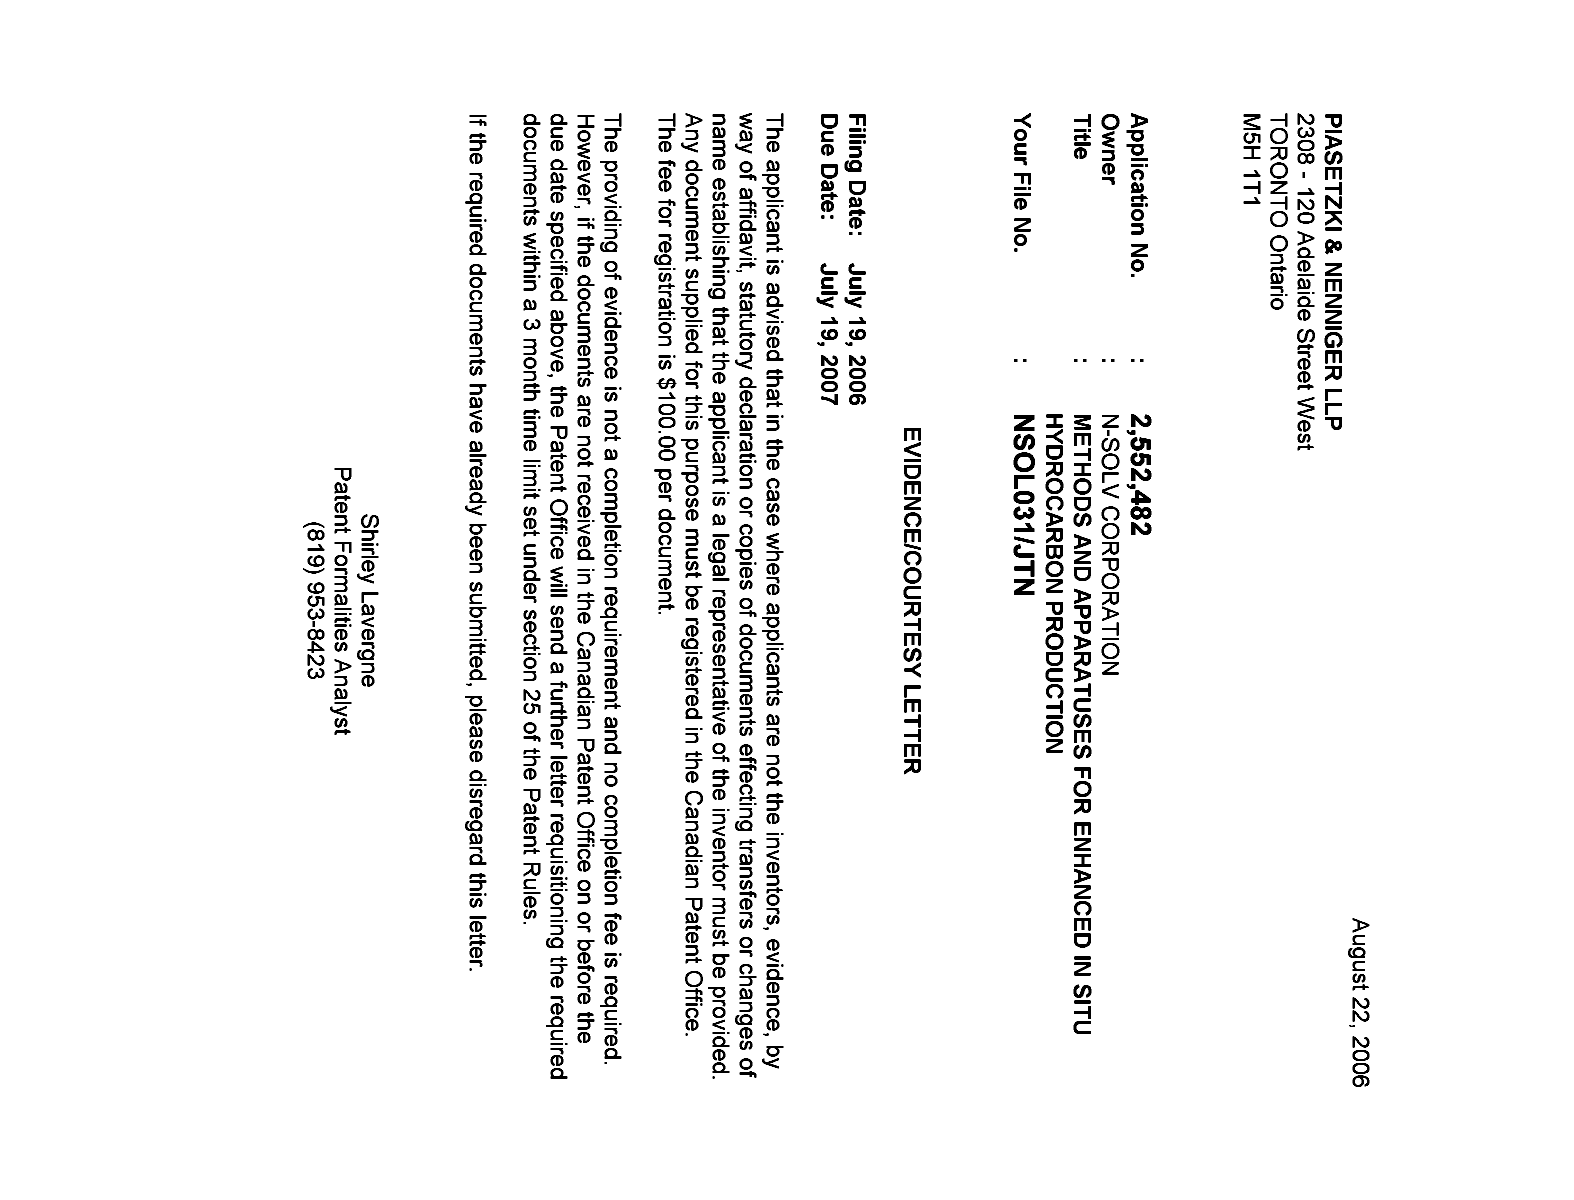 Document de brevet canadien 2552482. Correspondance 20051215. Image 1 de 1